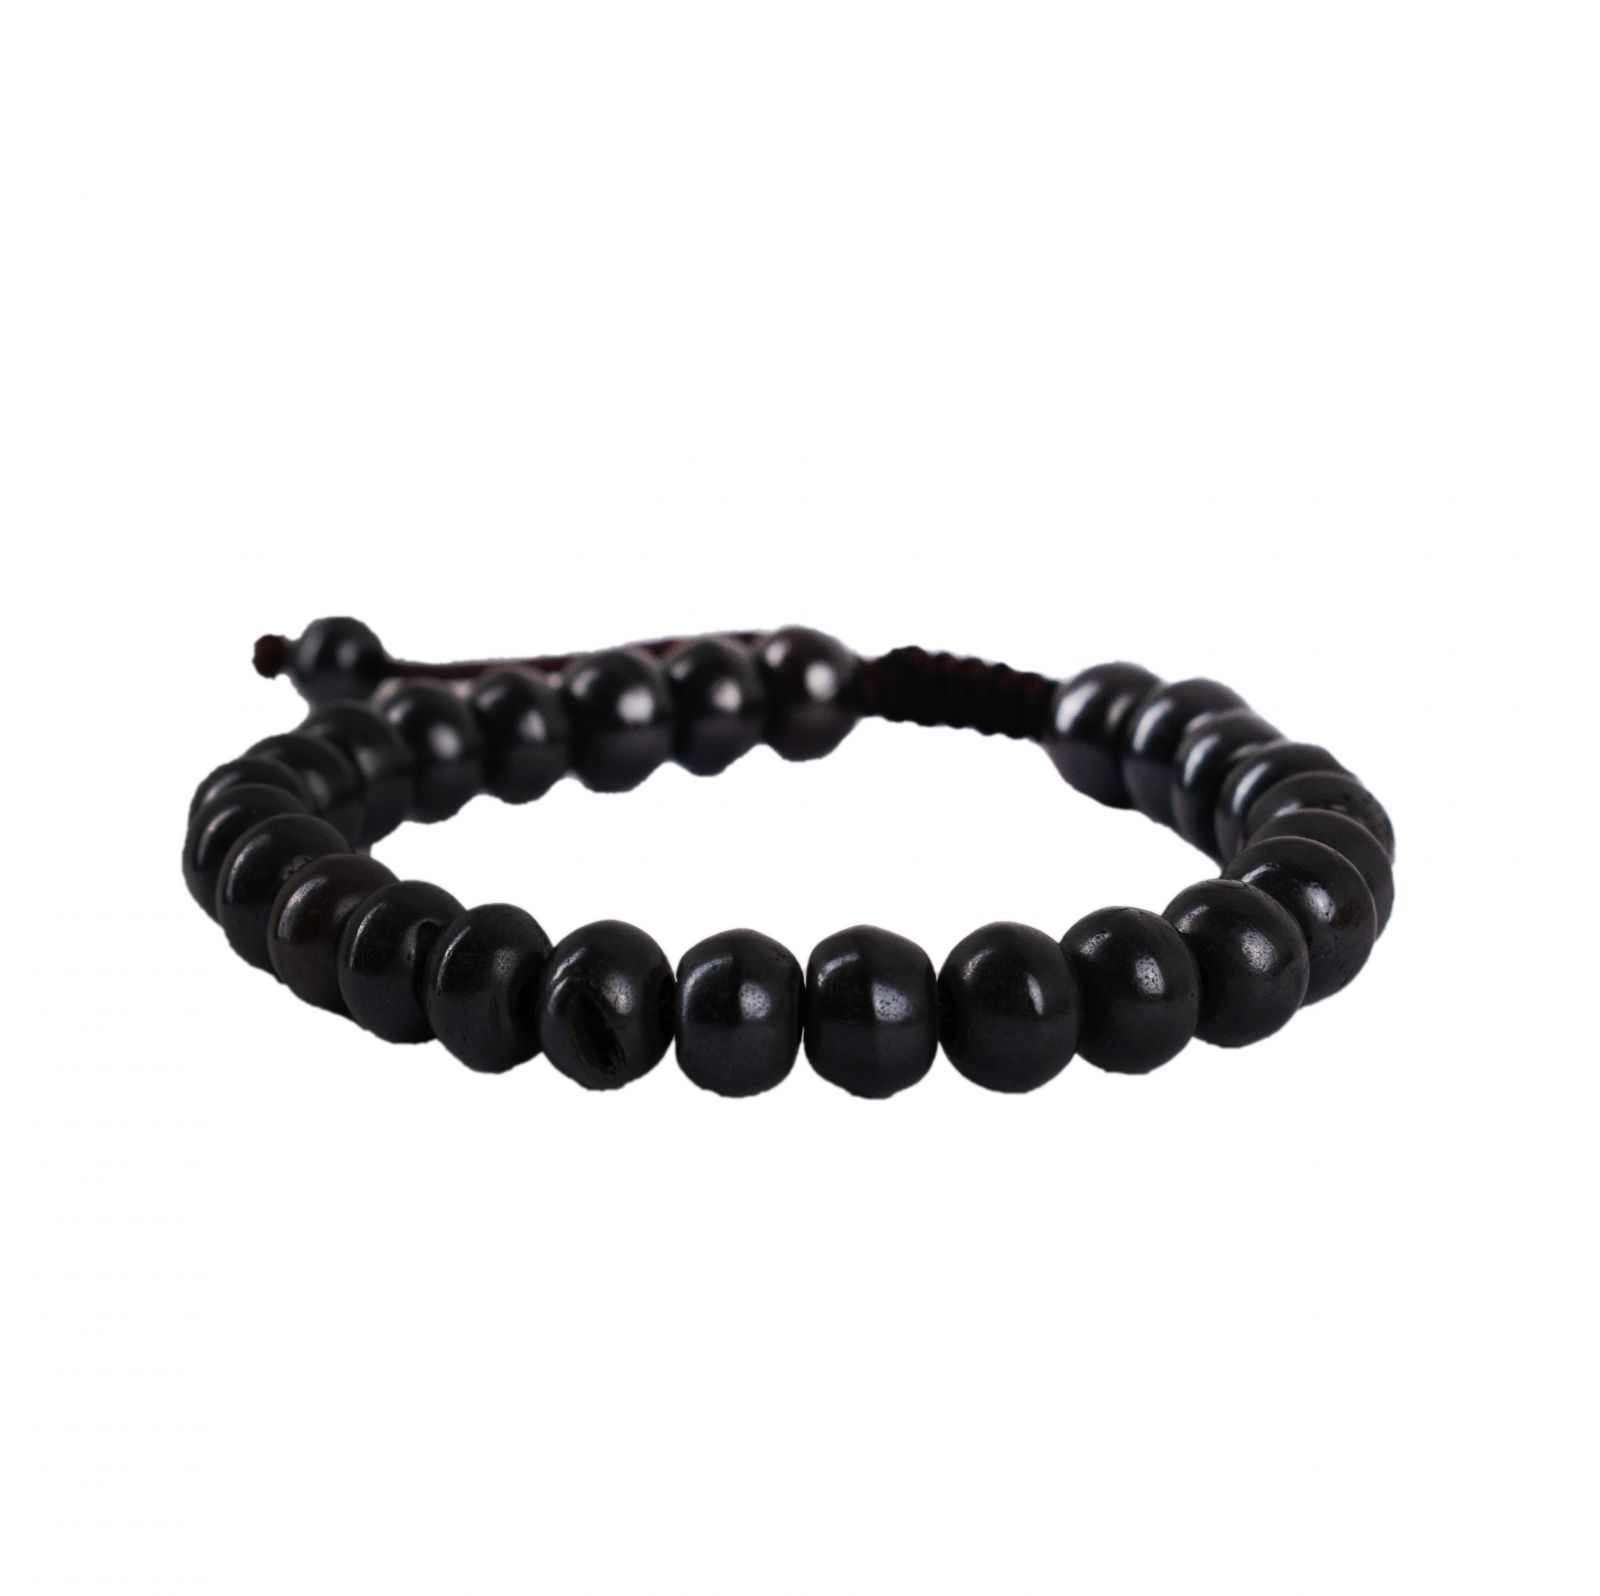 Knochen-Armband Schwarze Perlen Nepal